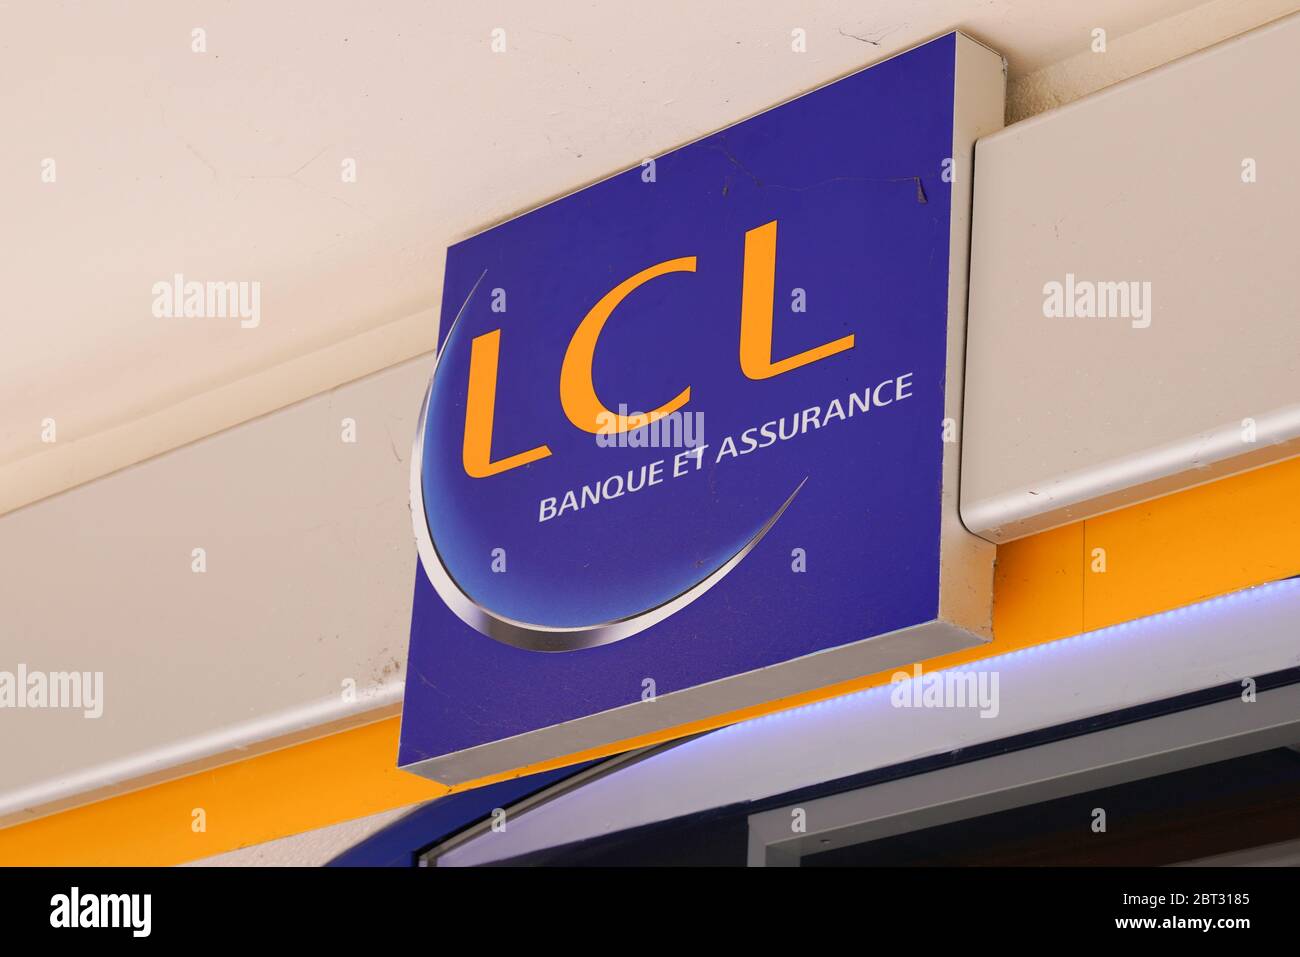 Bordeaux , Aquitaine / France - 05 05 2020 : lcl logo french sign brand le credit Lyonnais Banque et assurance office Stock Photo